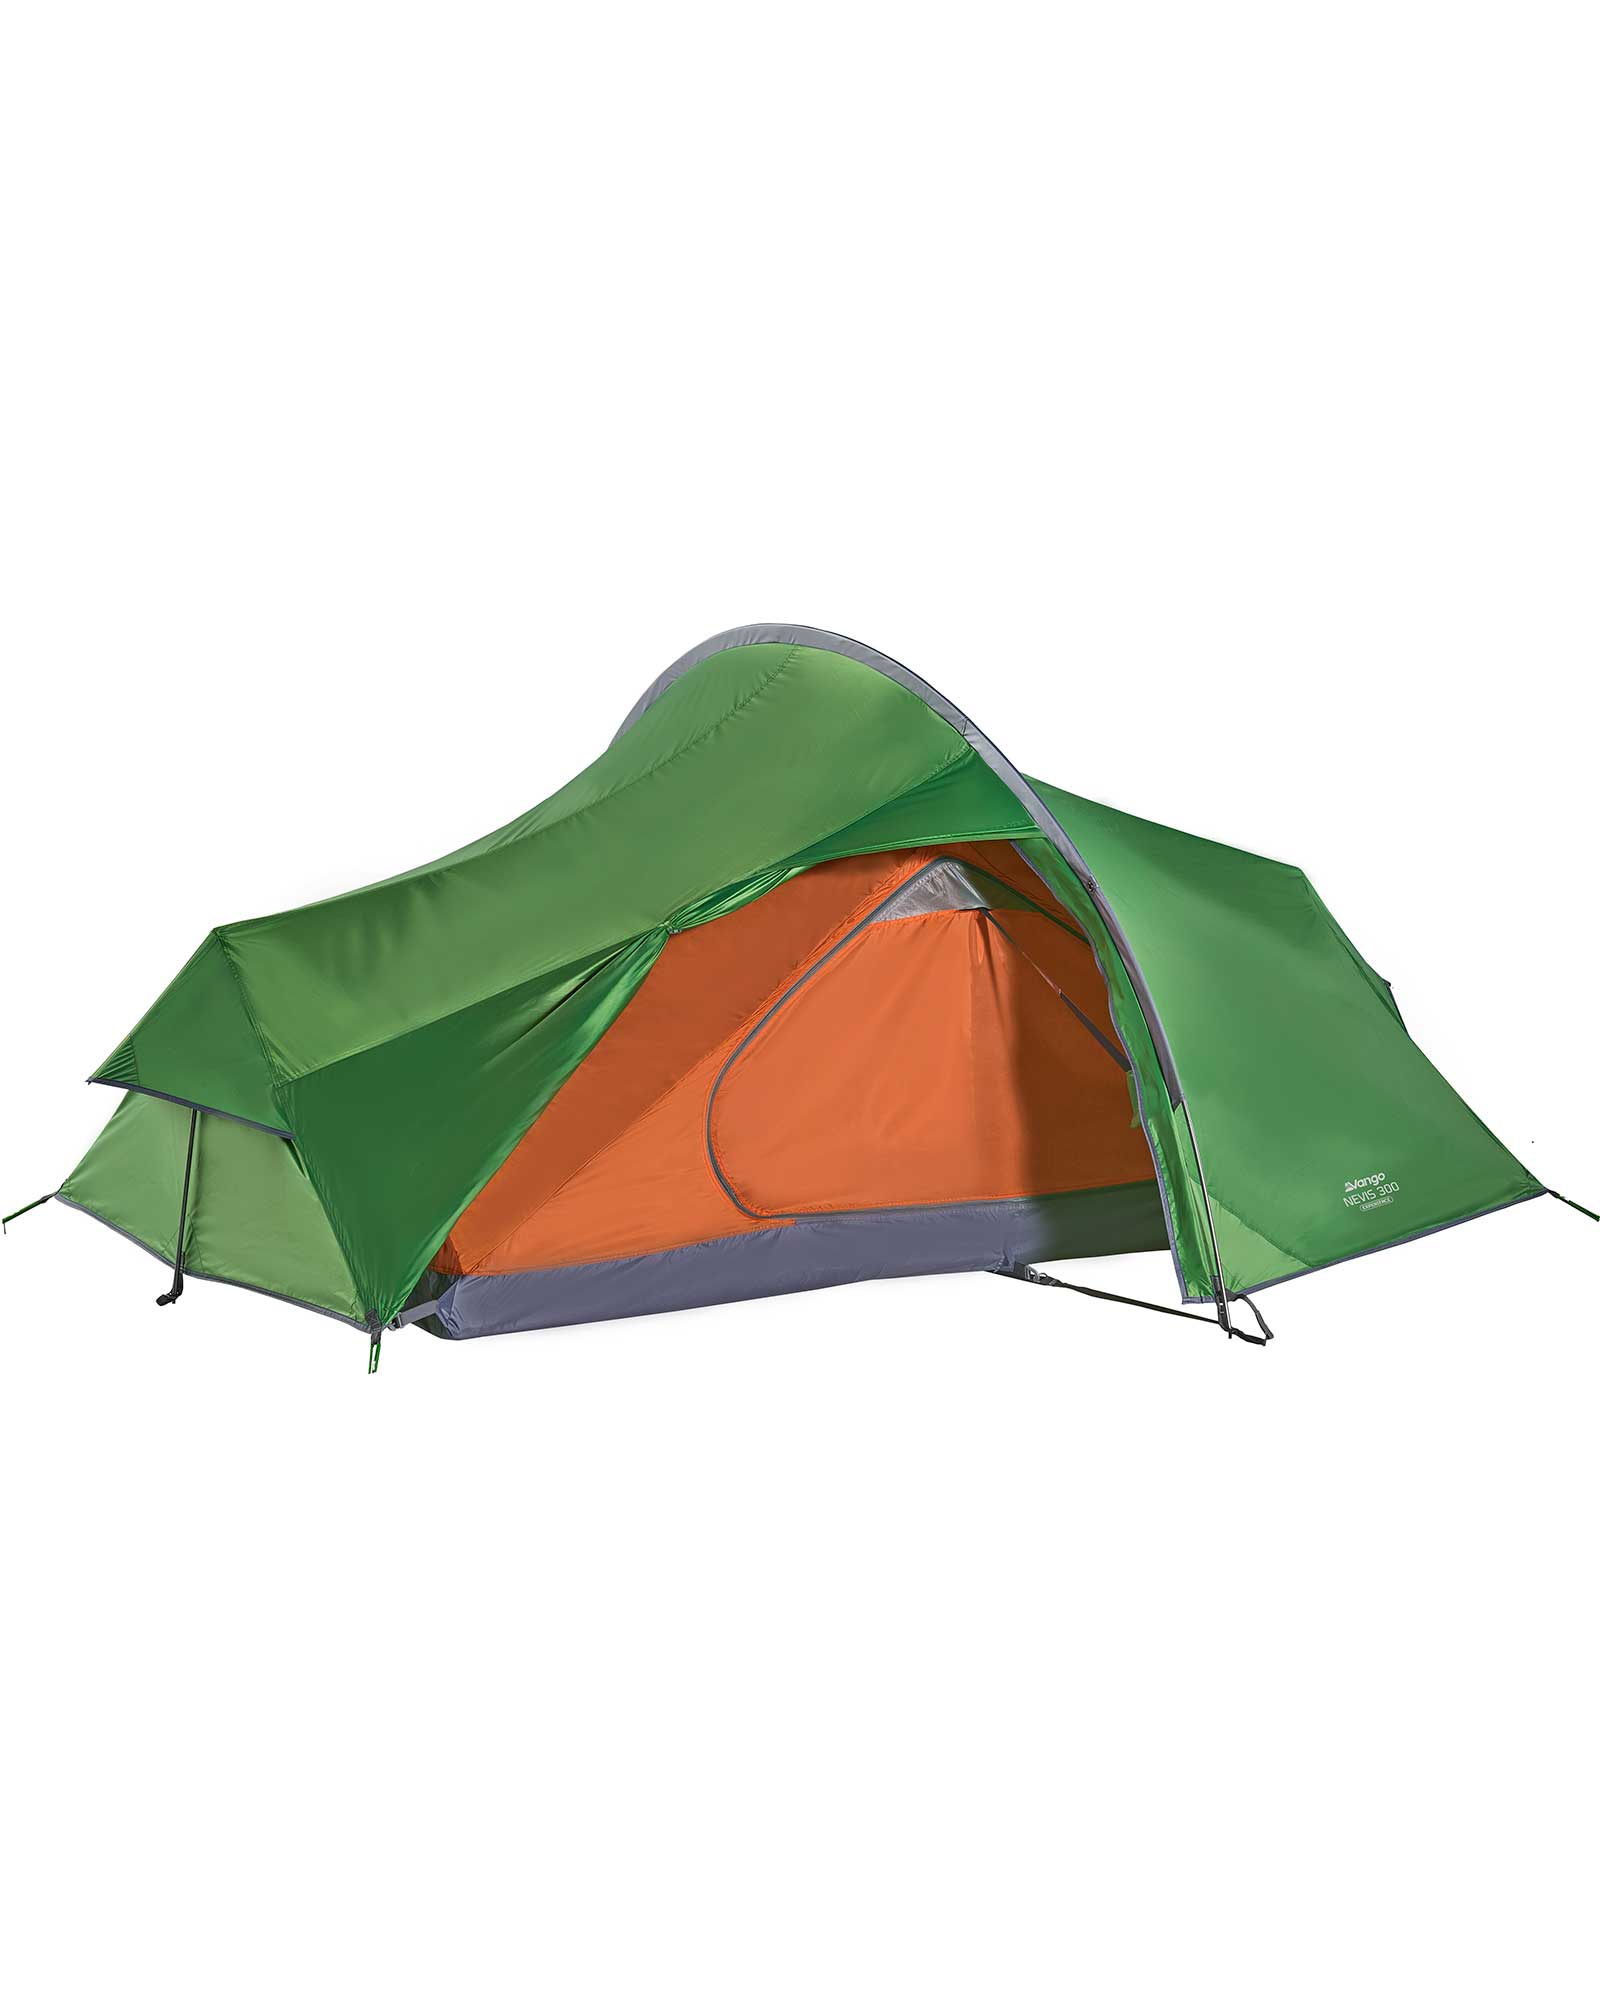 Vango Nevis 300 Tent - Pamir Green